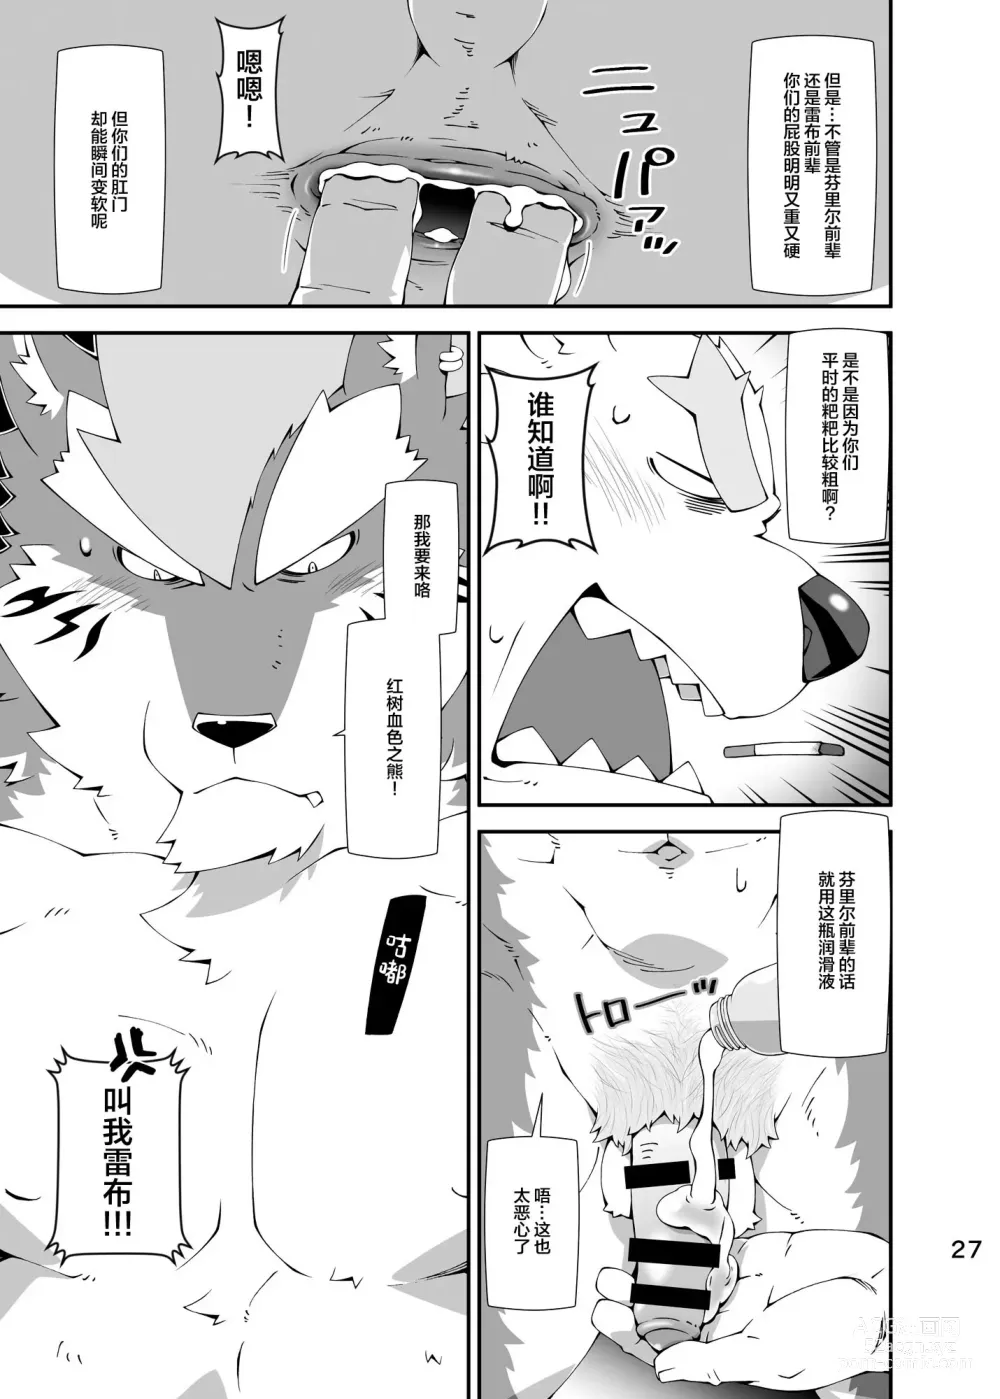 Page 26 of doujinshi Shirokuma to Fe